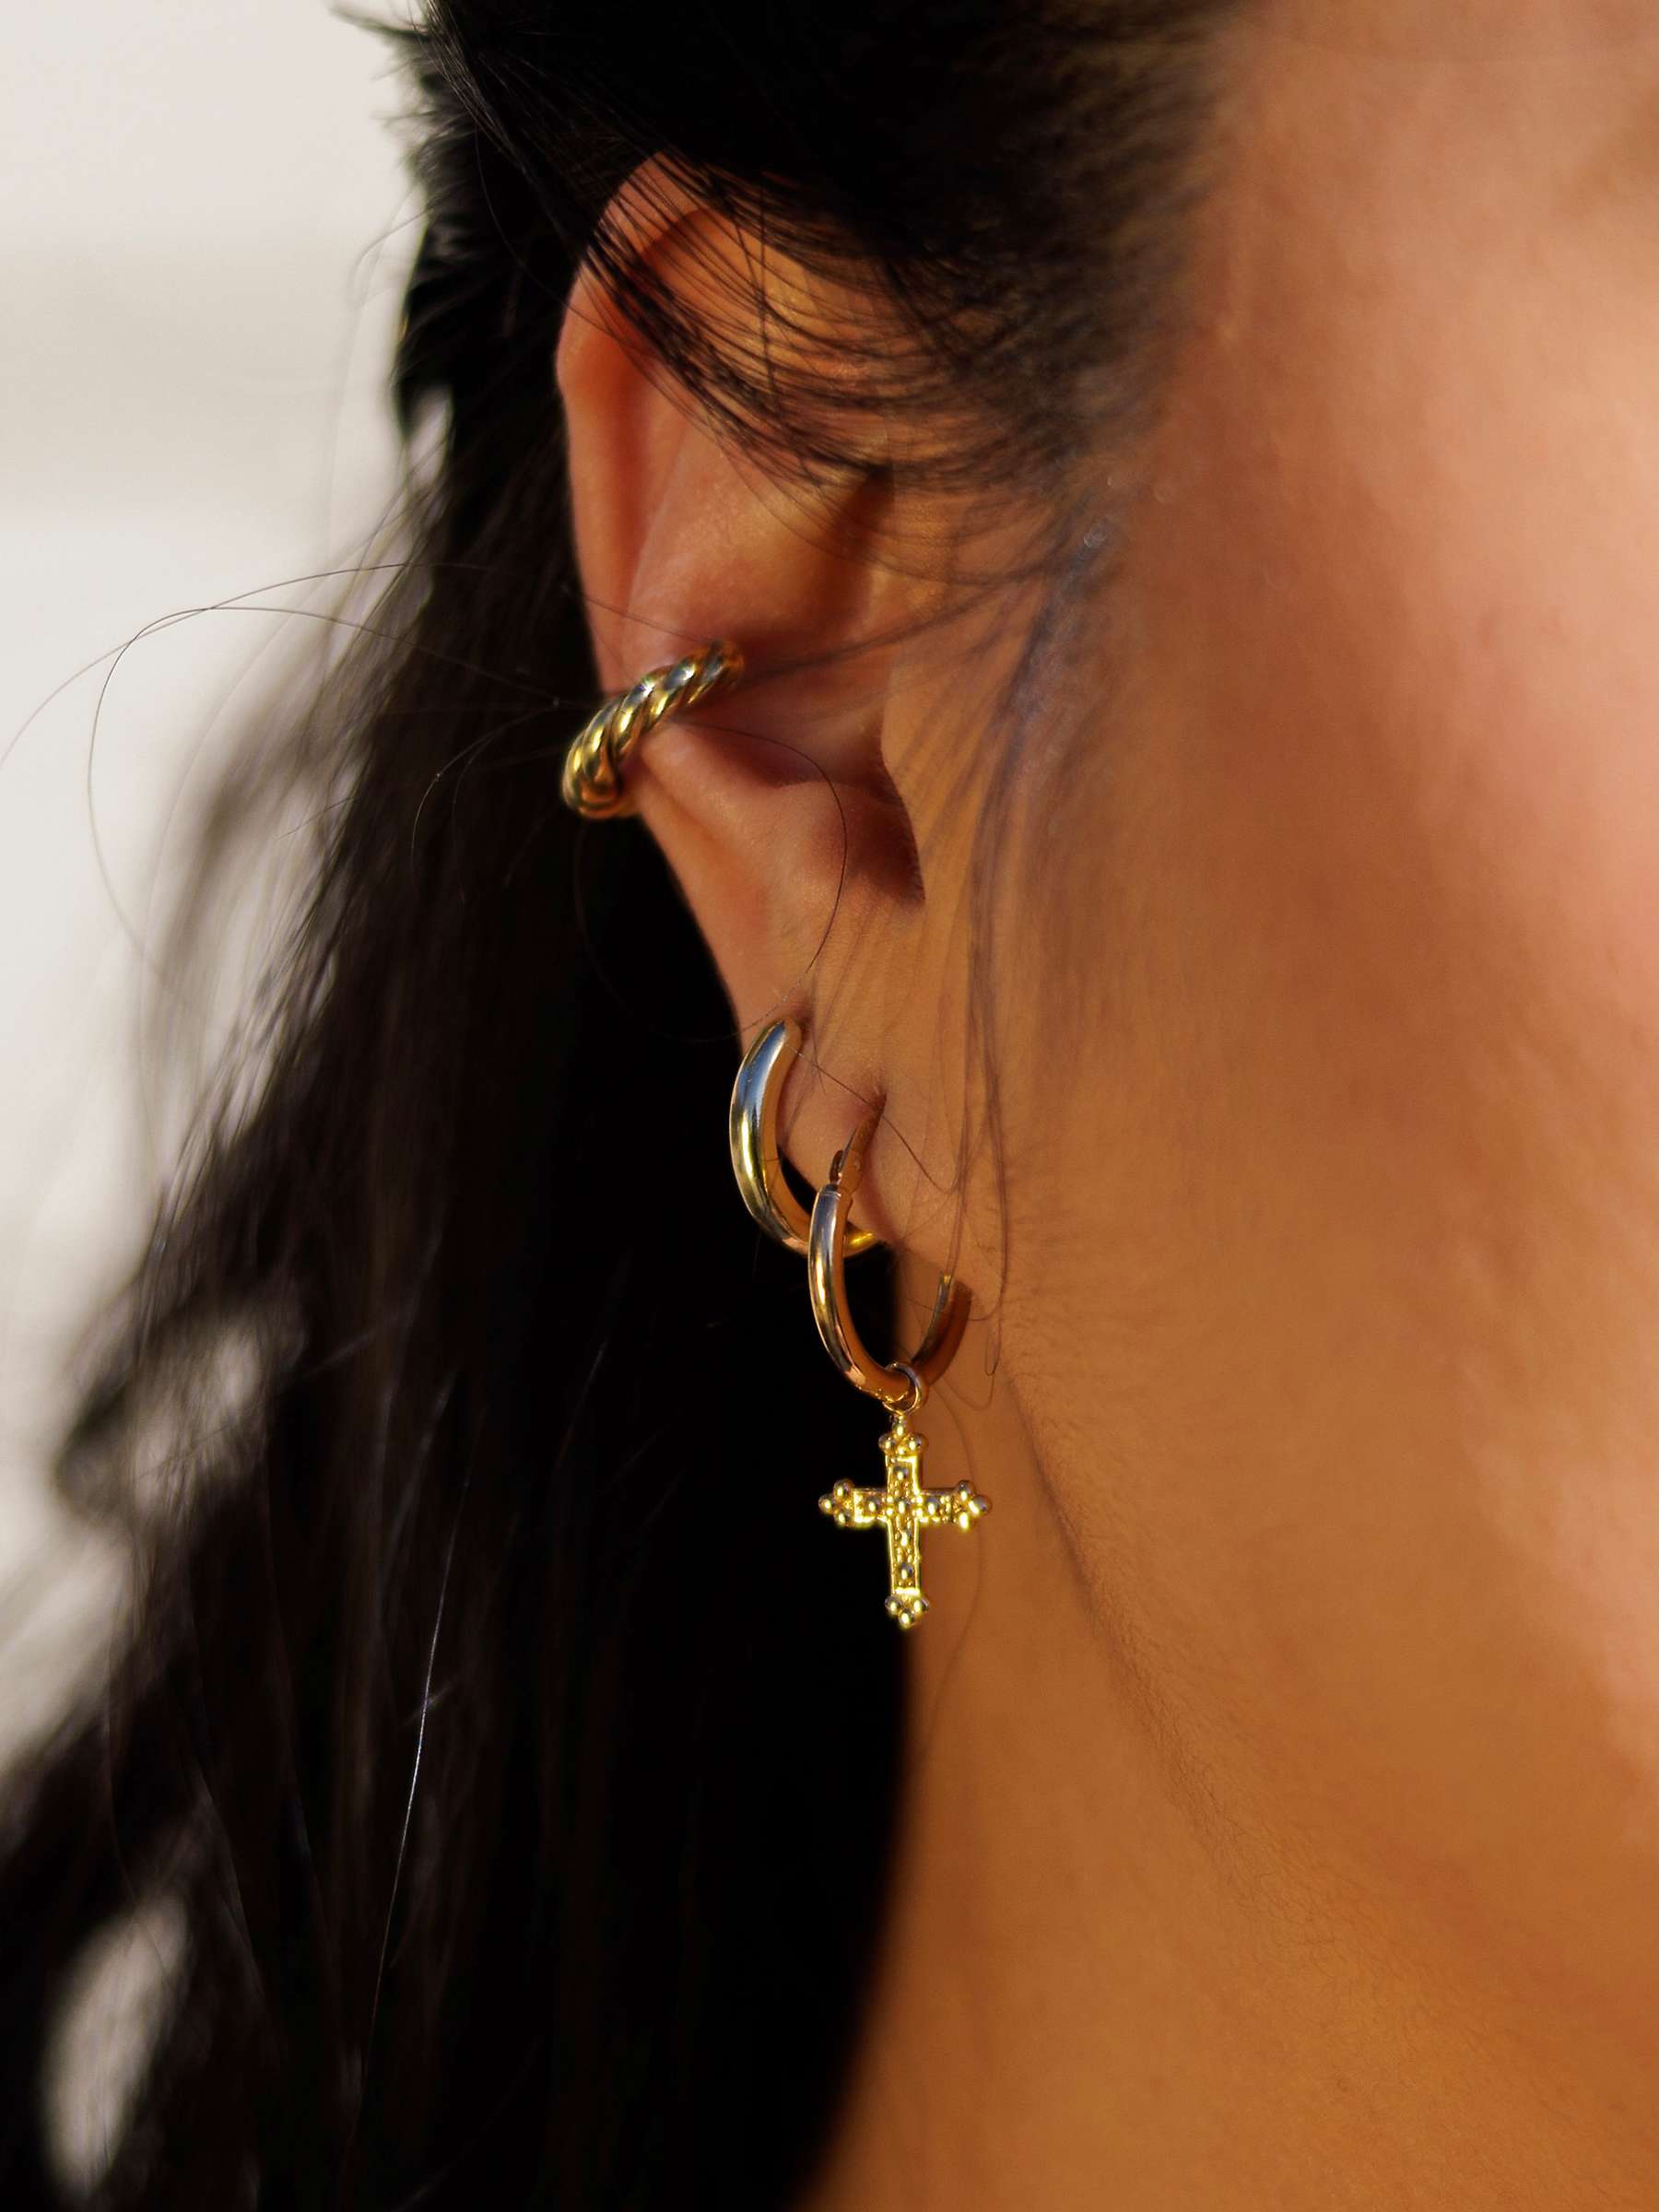 Buy LARNAUTI Beaded Cross Charm Hoop Earrings, Gold Online at johnlewis.com